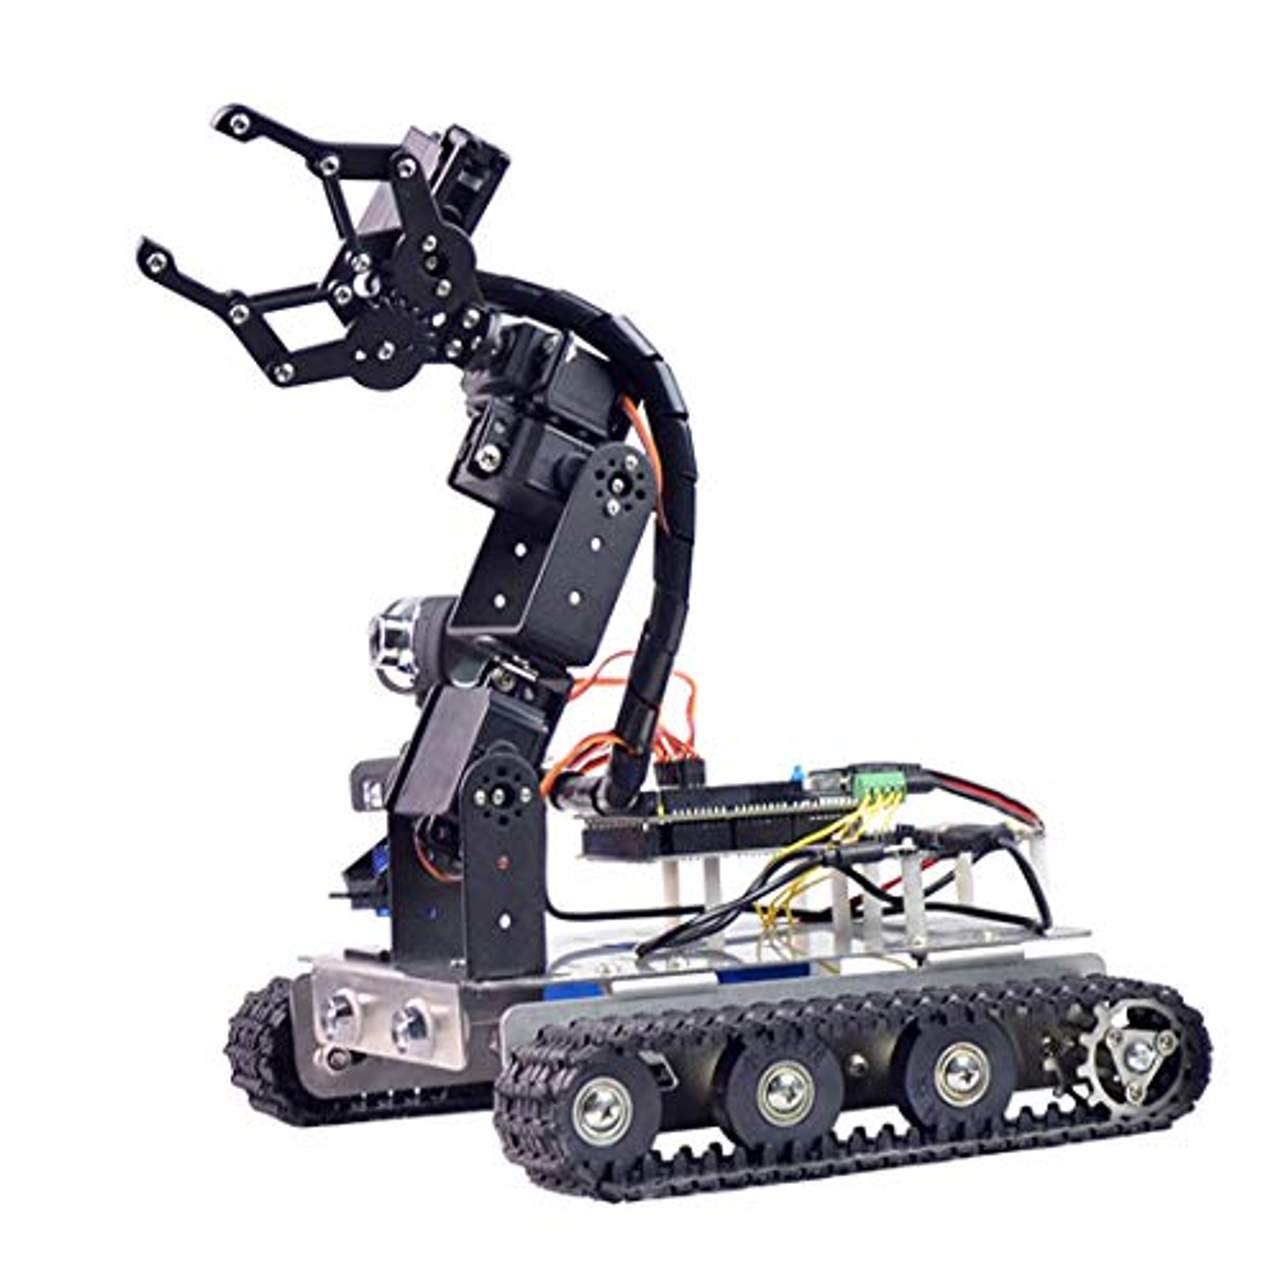 Batop Programmierbar Robot für Raspberry Pi